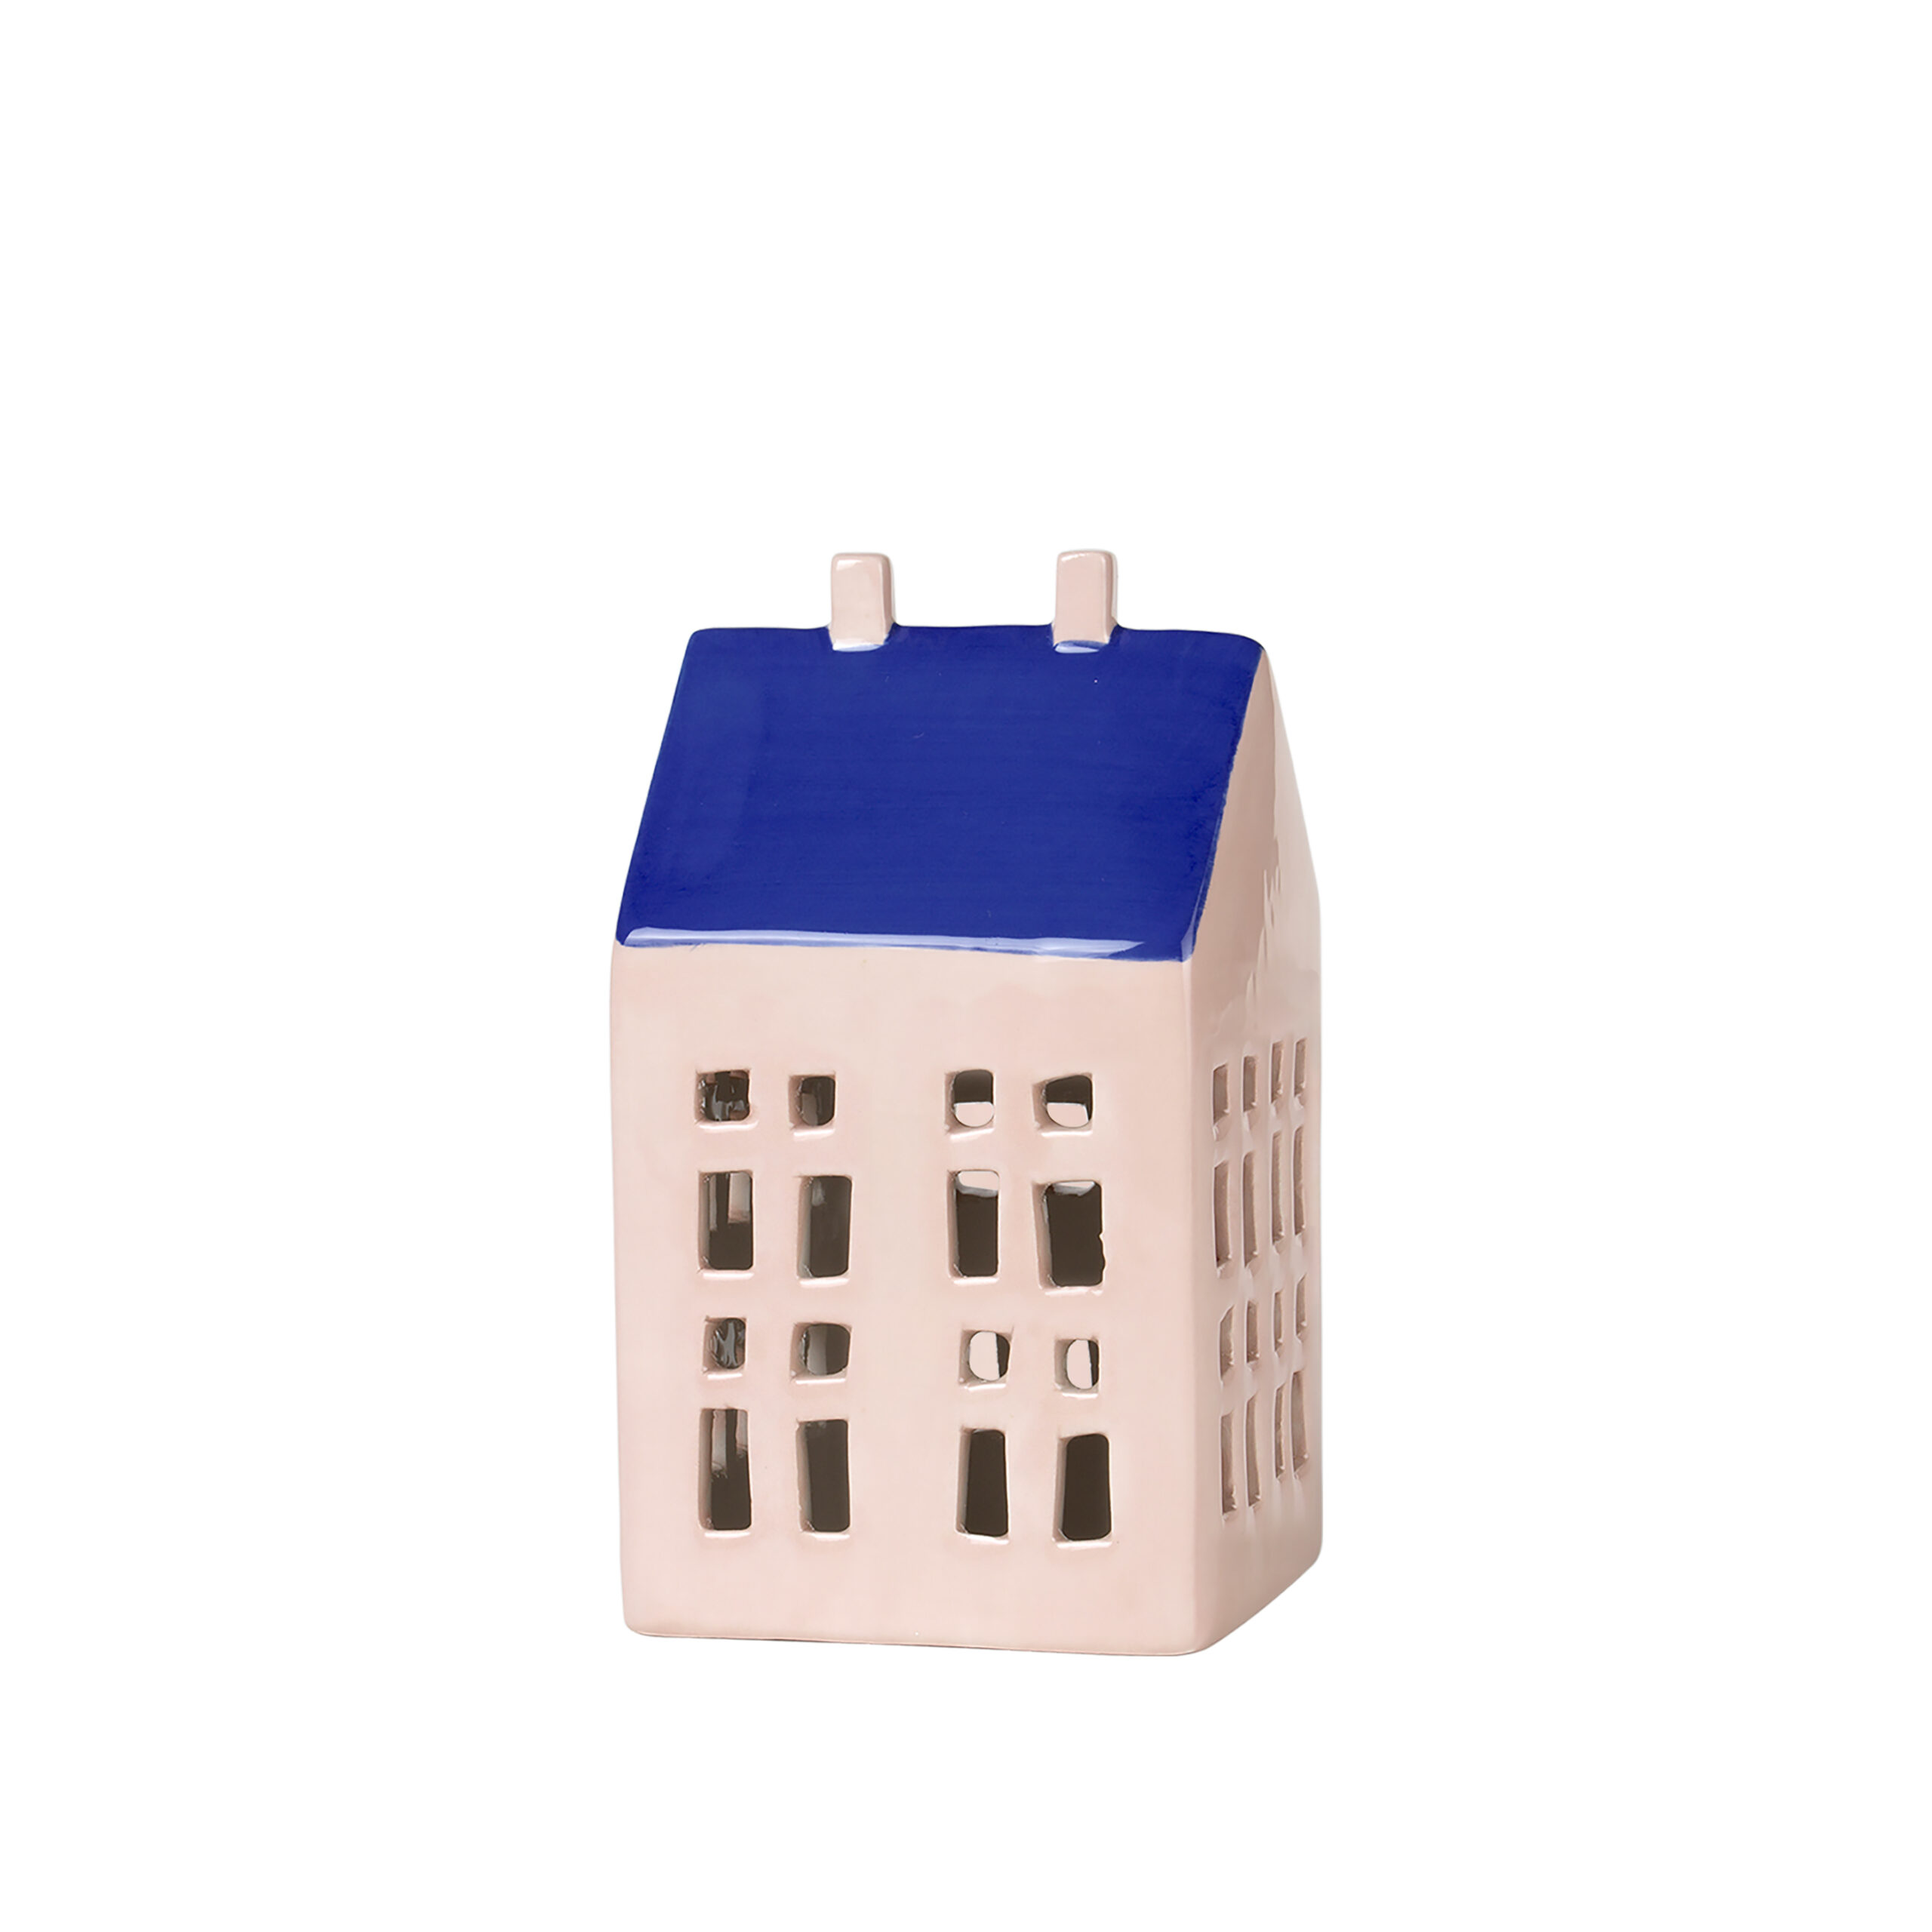 Light house “Bo” fra Broste – Lyserød, koboltblå